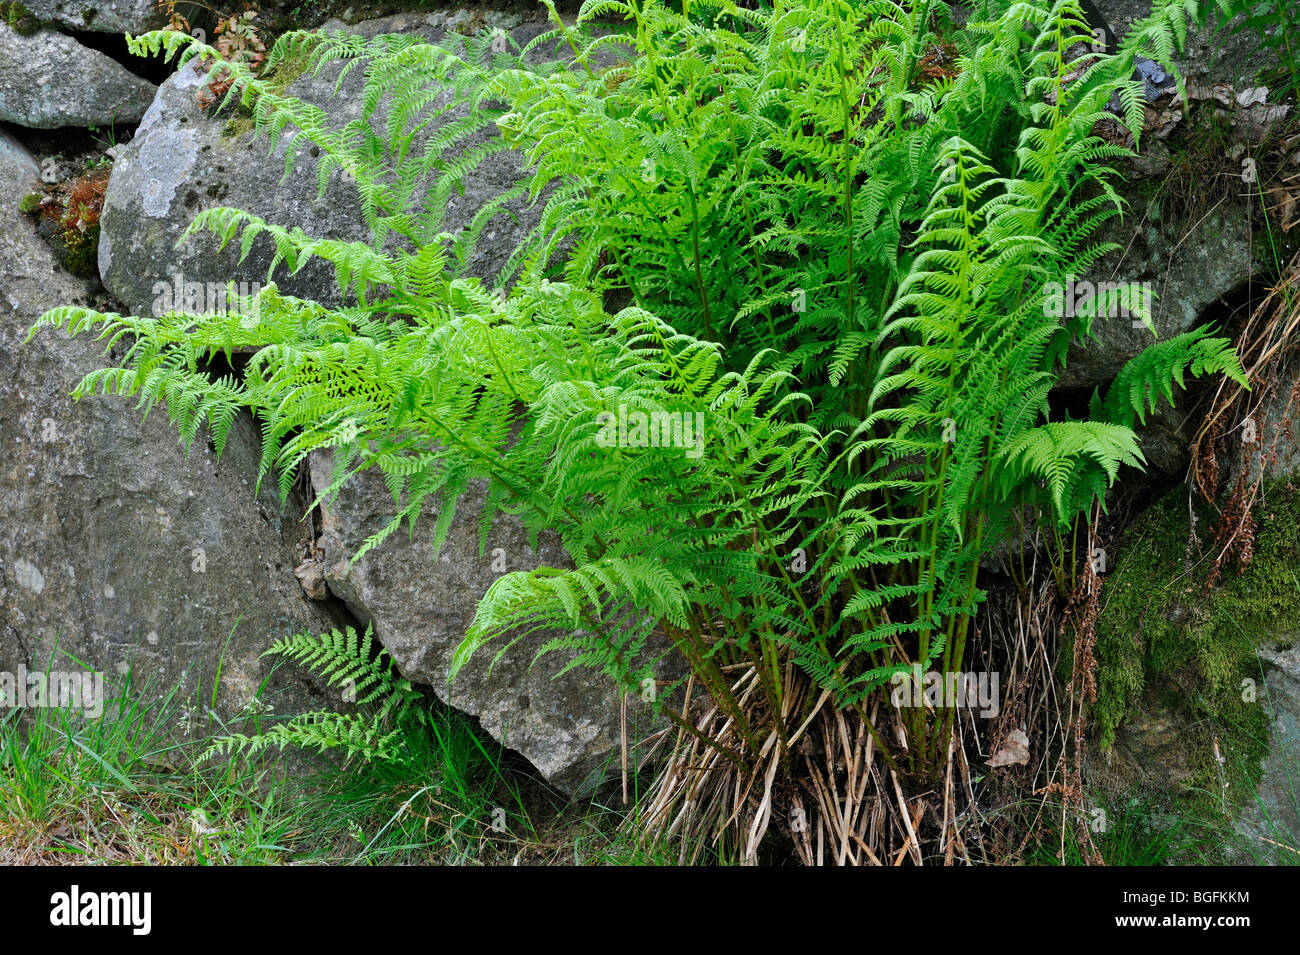 Common Lady-fern / lady fern (Athyrium filix-femina) growing among rocks Stock Photo